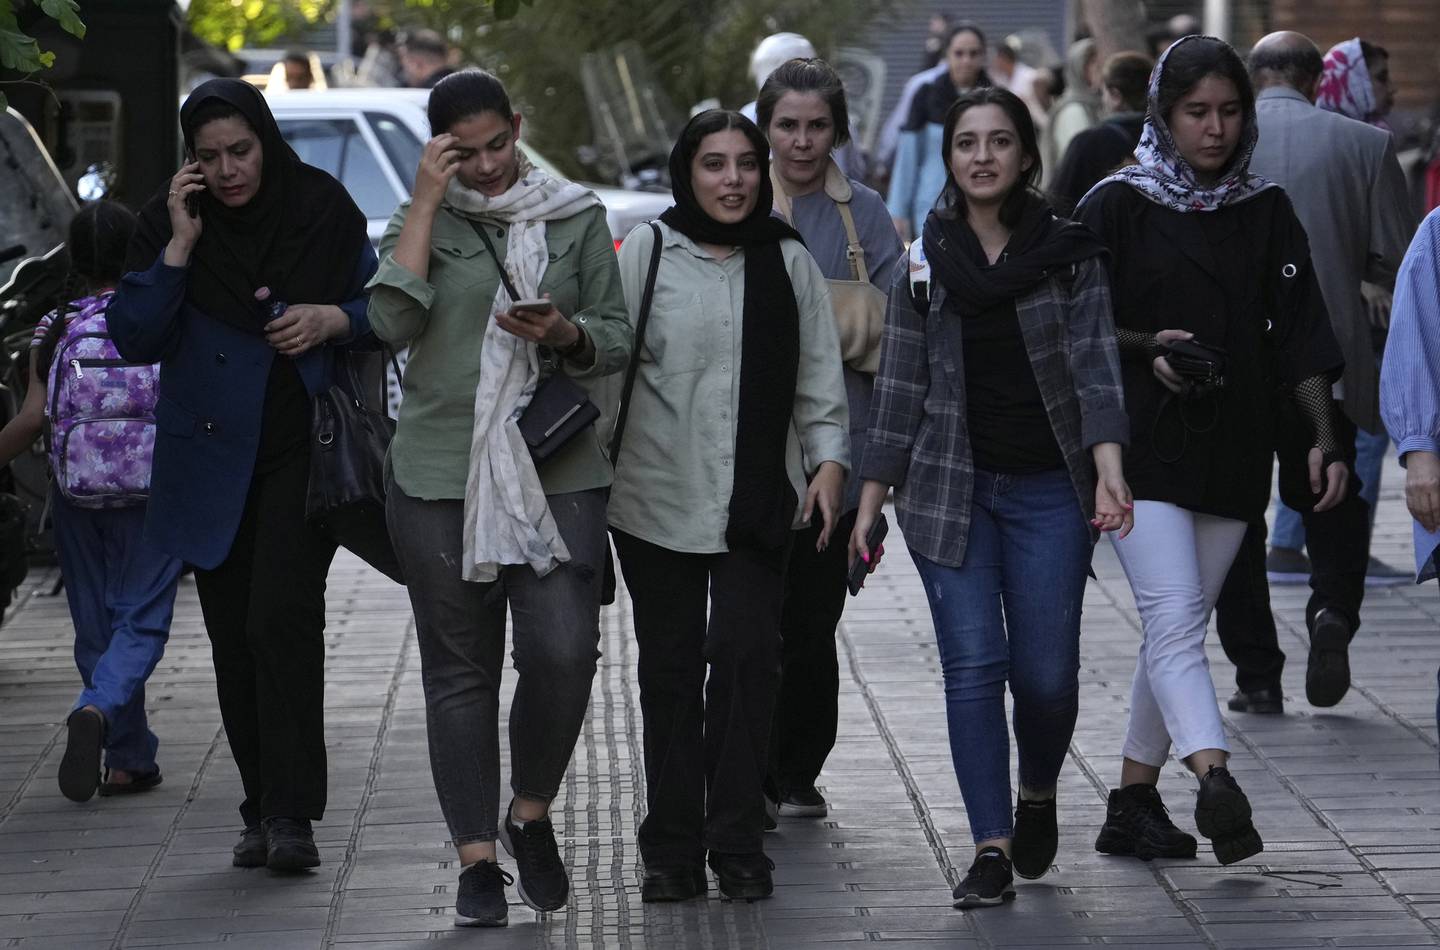 Iranske kvinner, noen uten hodeplagg, på gata i Teheran i forrige uke. Lørdag er det ett år siden Mahsa Amini døde, og landsomfattende protester mot presteregimet startet.